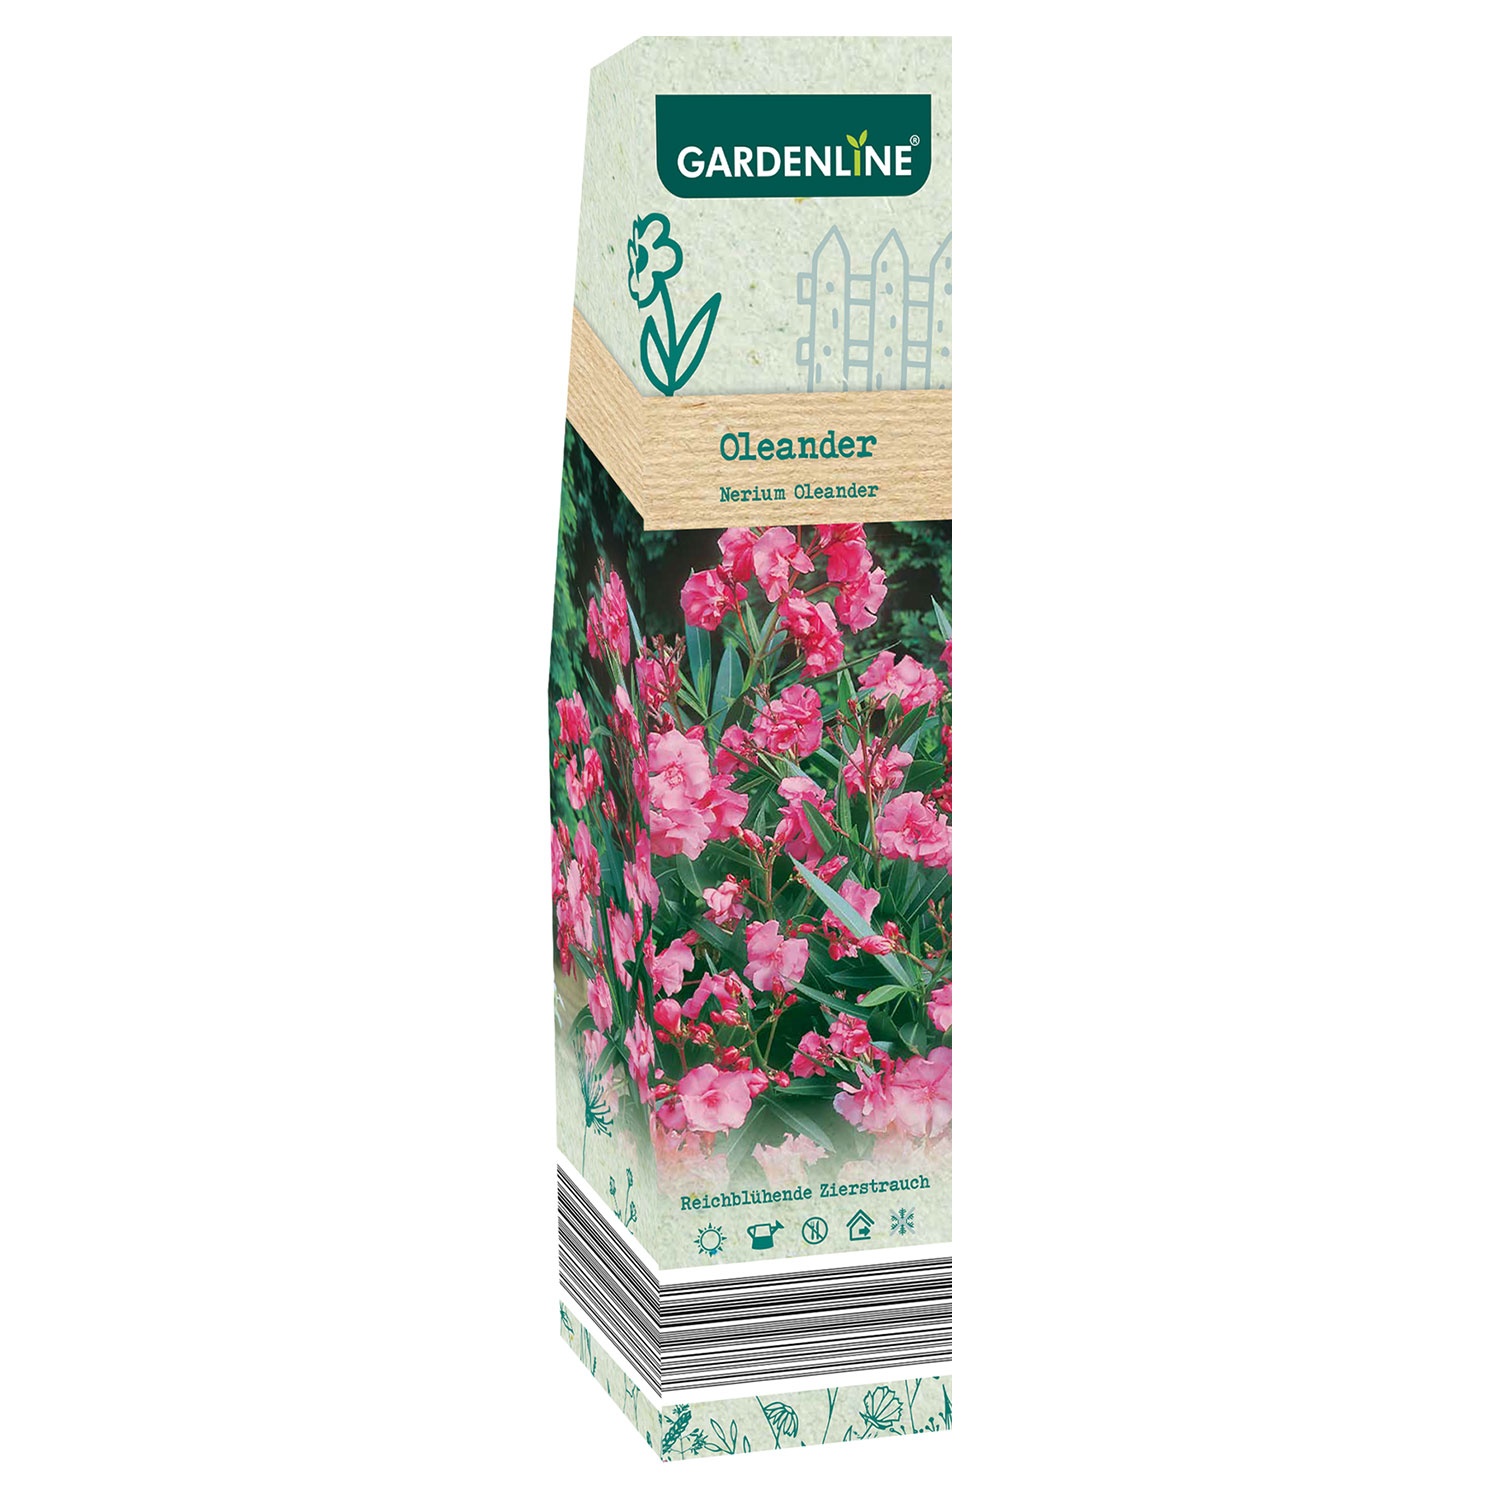 GARDENLINE Premium-Beetpflanzen-Sortiment und -Rosen